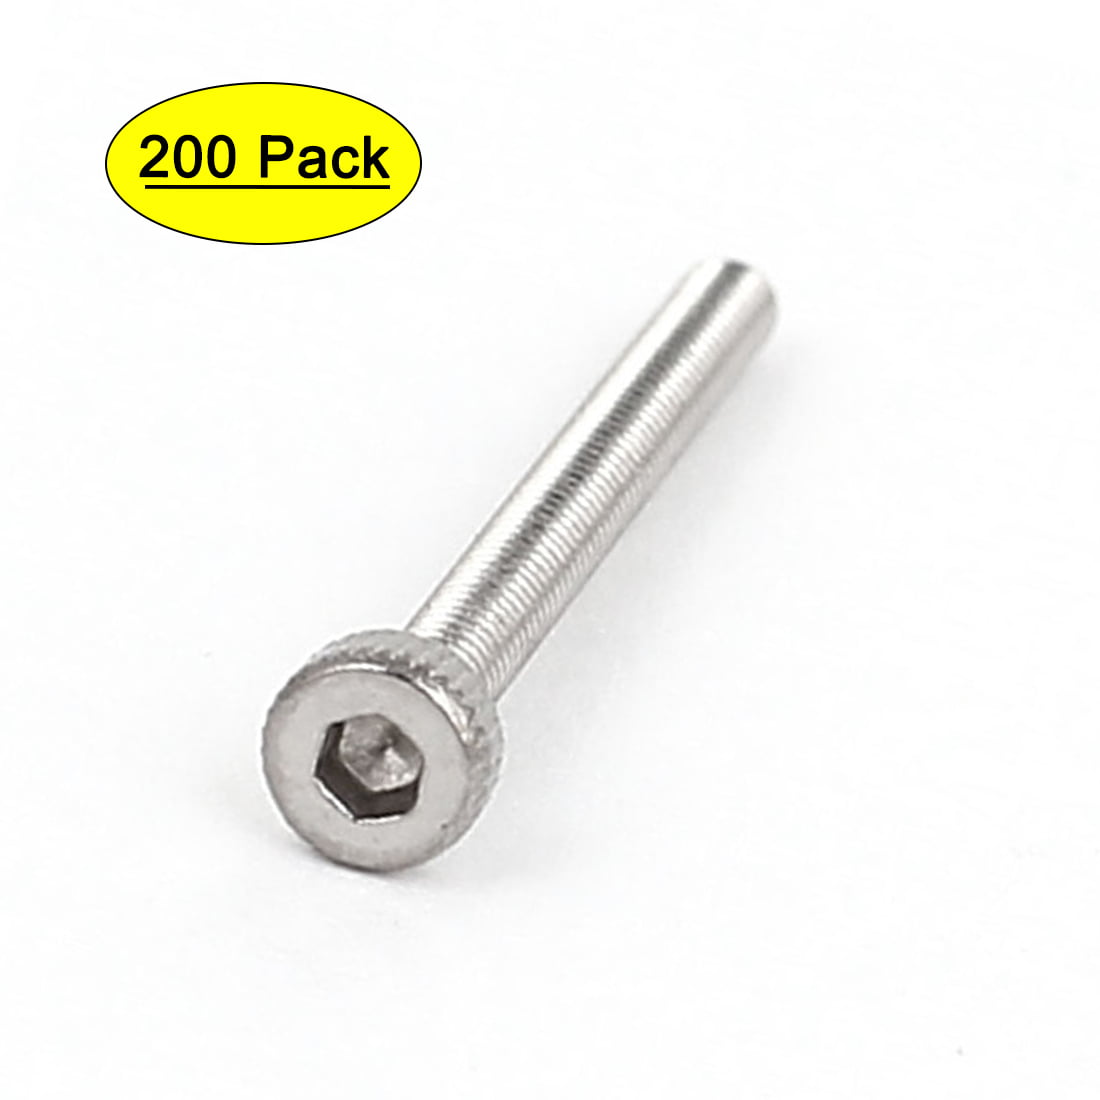 200x M2 x 8mm Socket Head Cap Screws Stainless Steel Allen Socket Nuts Washers 